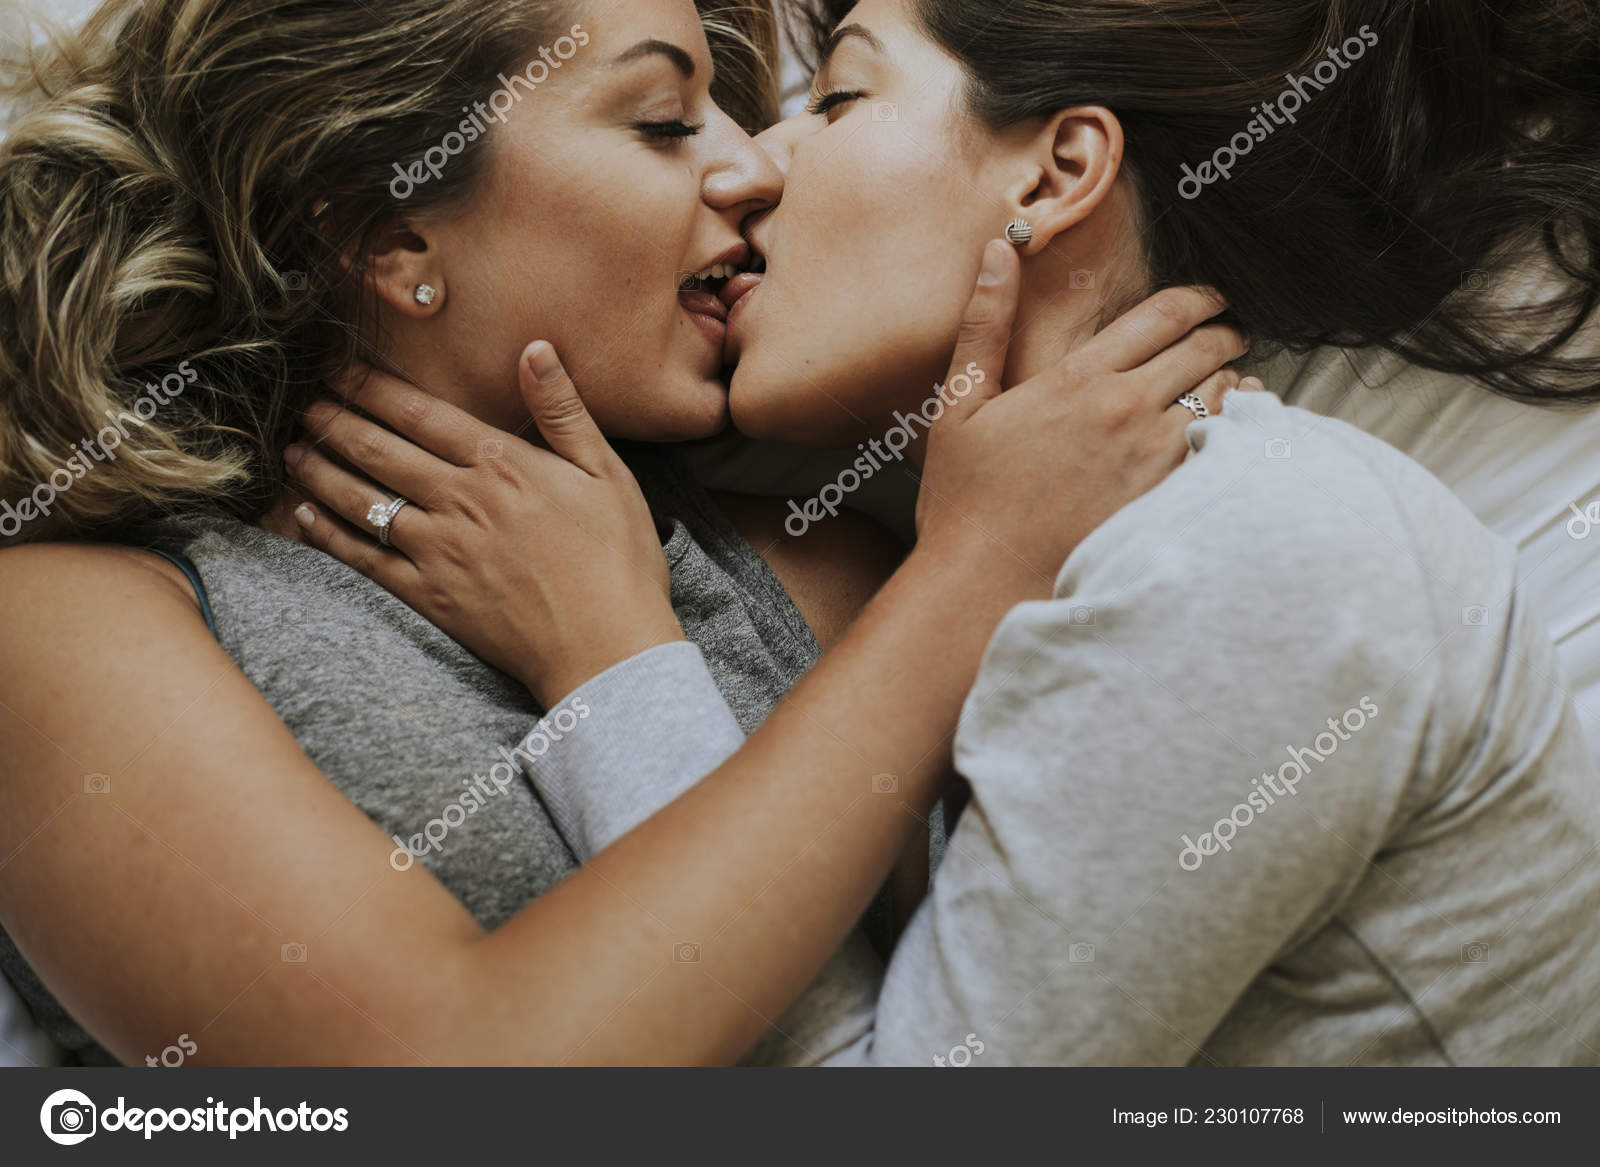 Лесбиянки Целуются Утрам стоковое фото ©Rawpixel 230107768